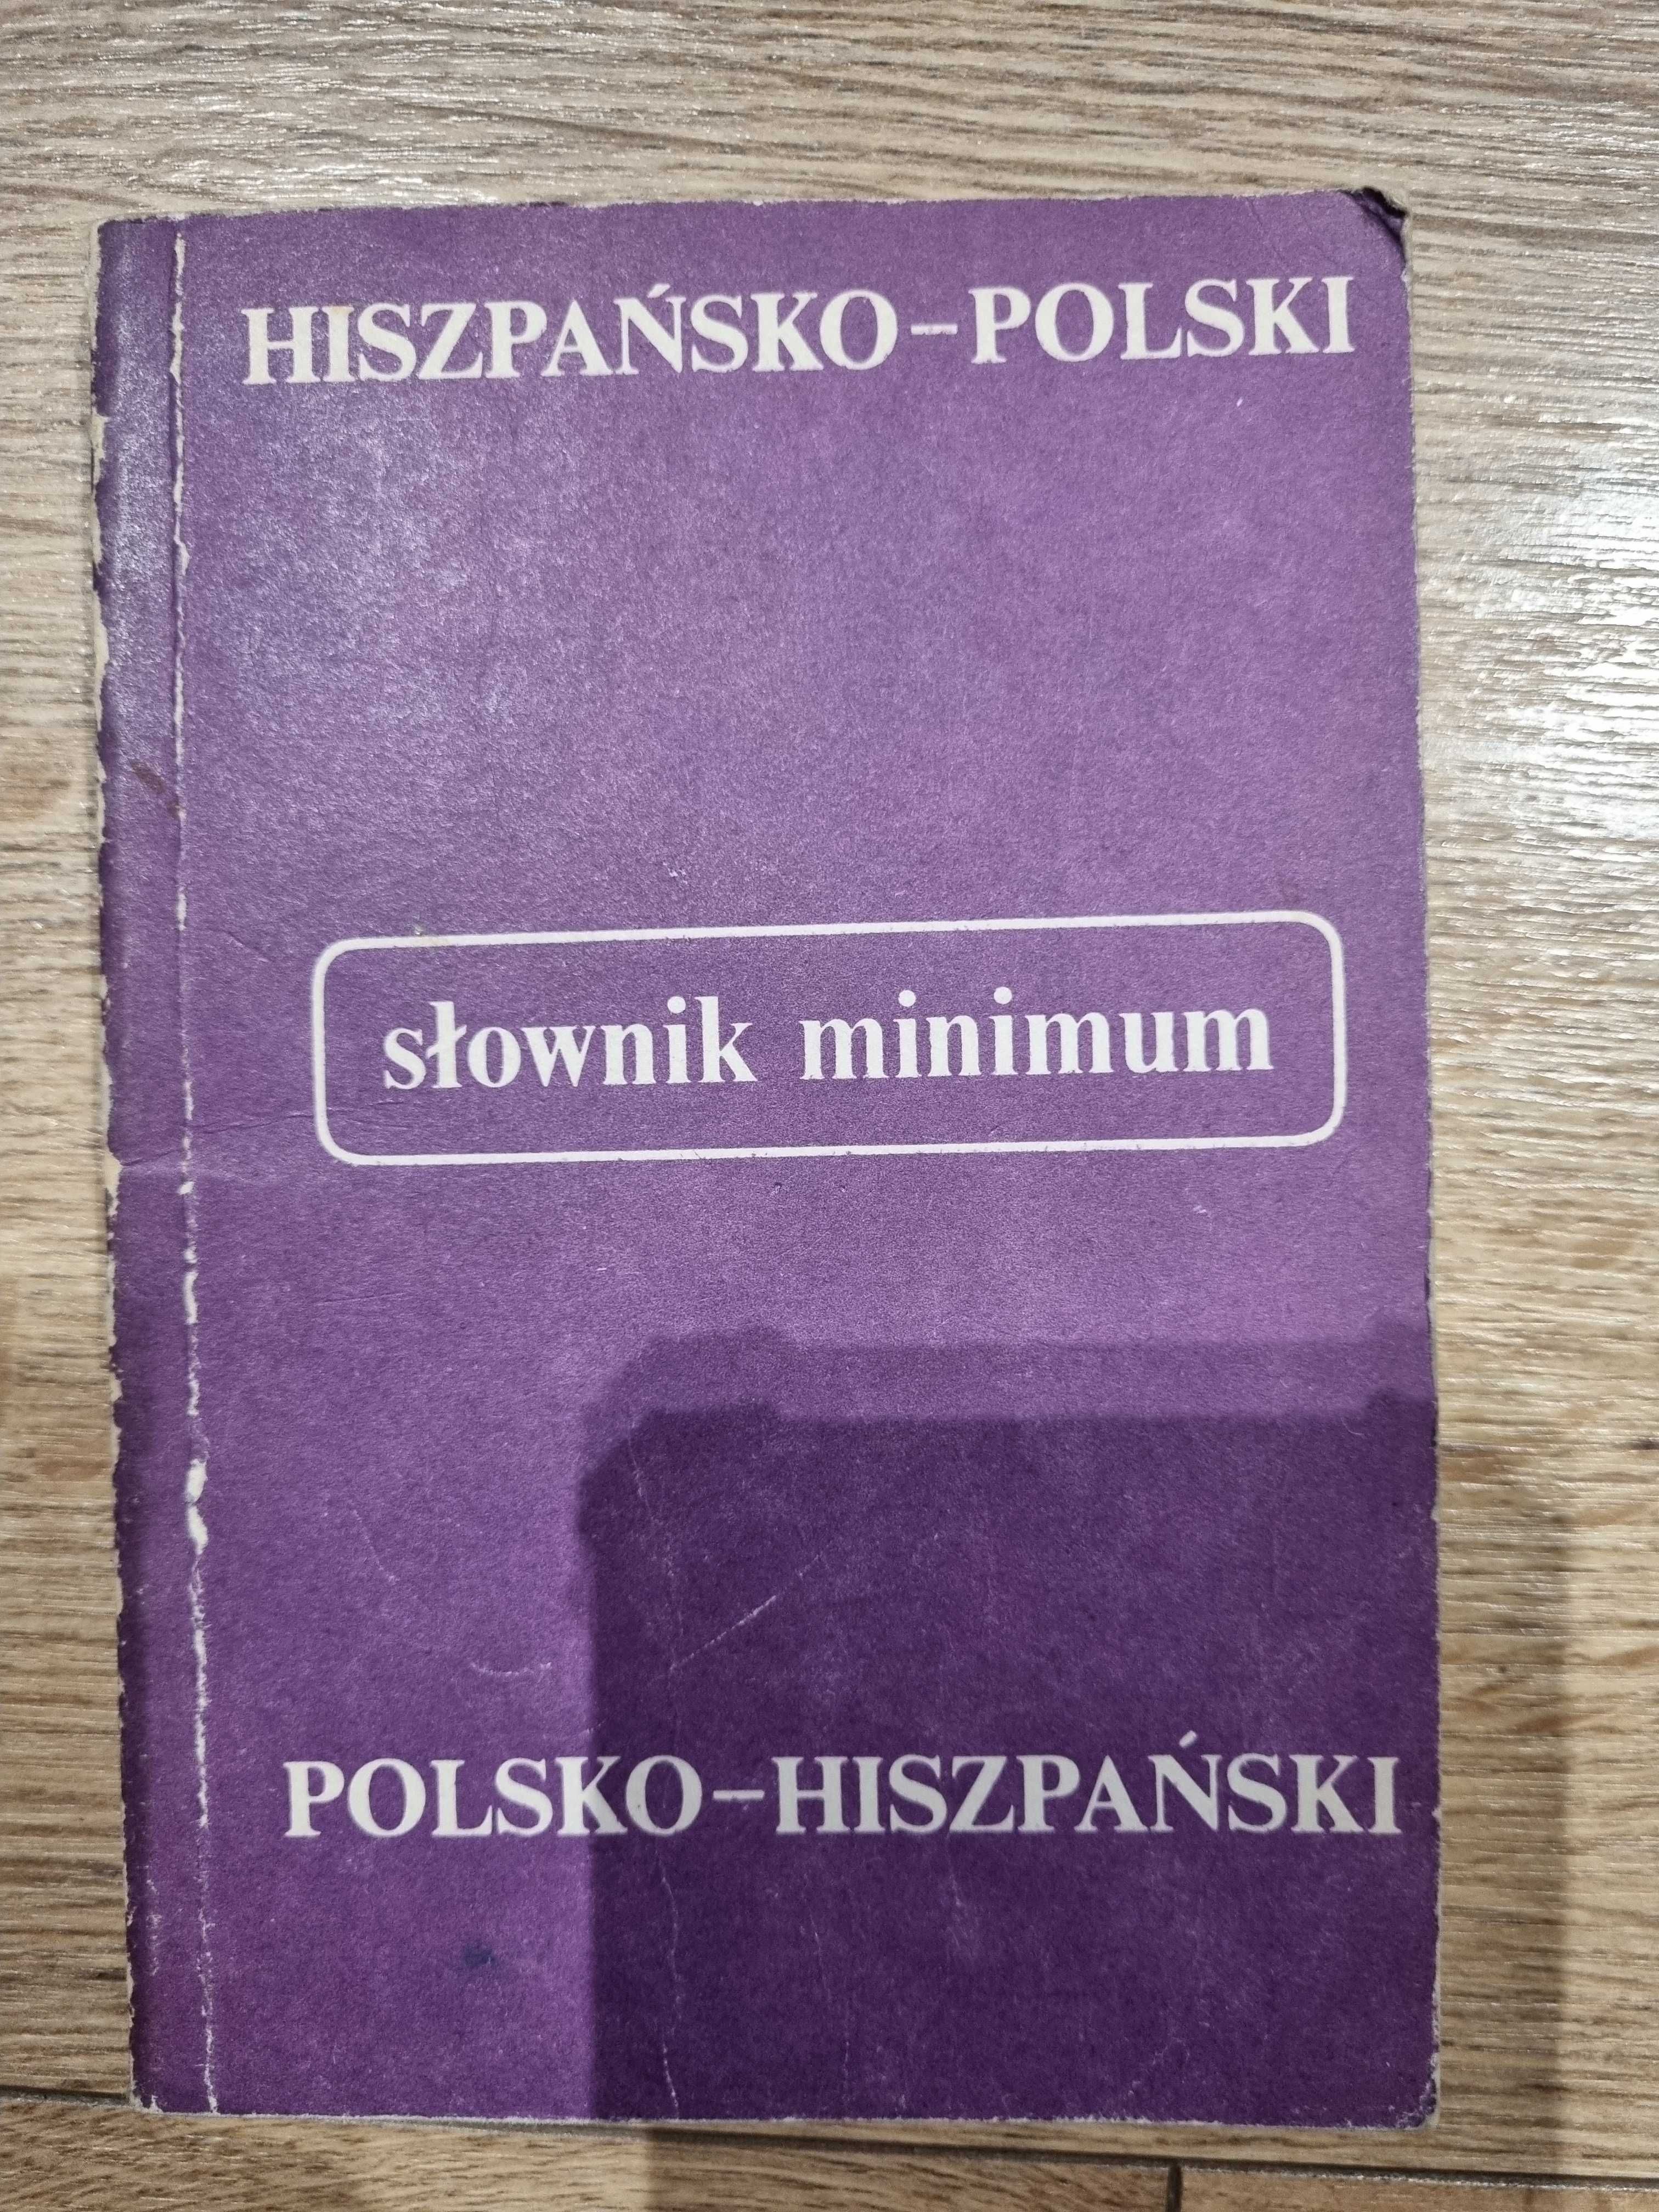 hiszpańsko polski polsko hiszpański słownik mini